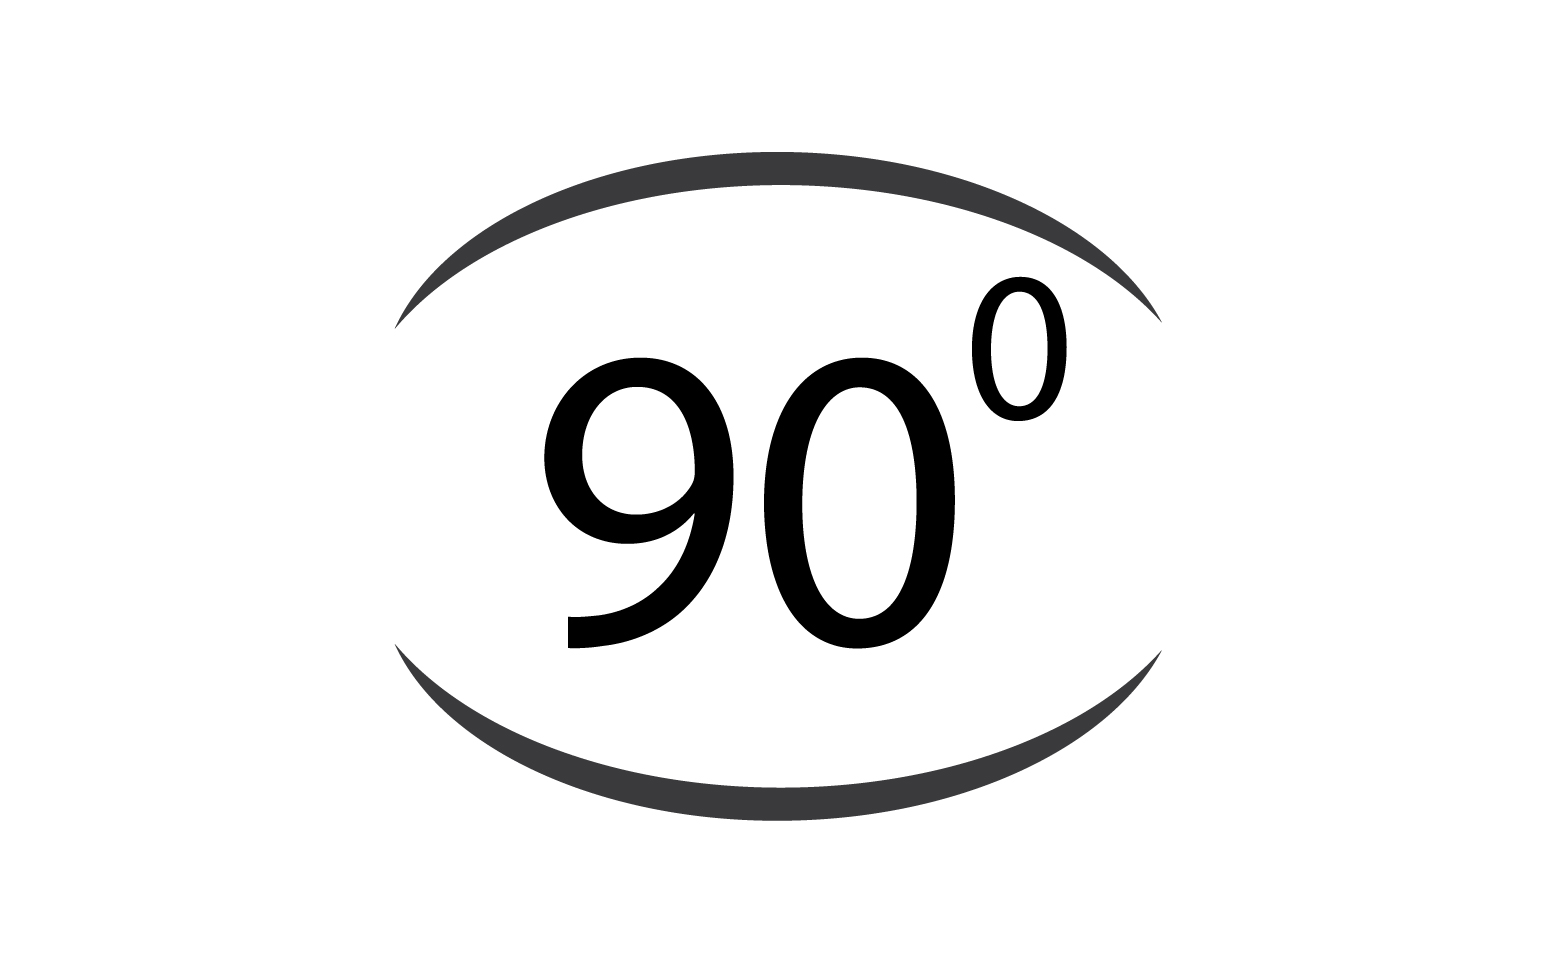 90 degree angle rotation icon symbol logo v48